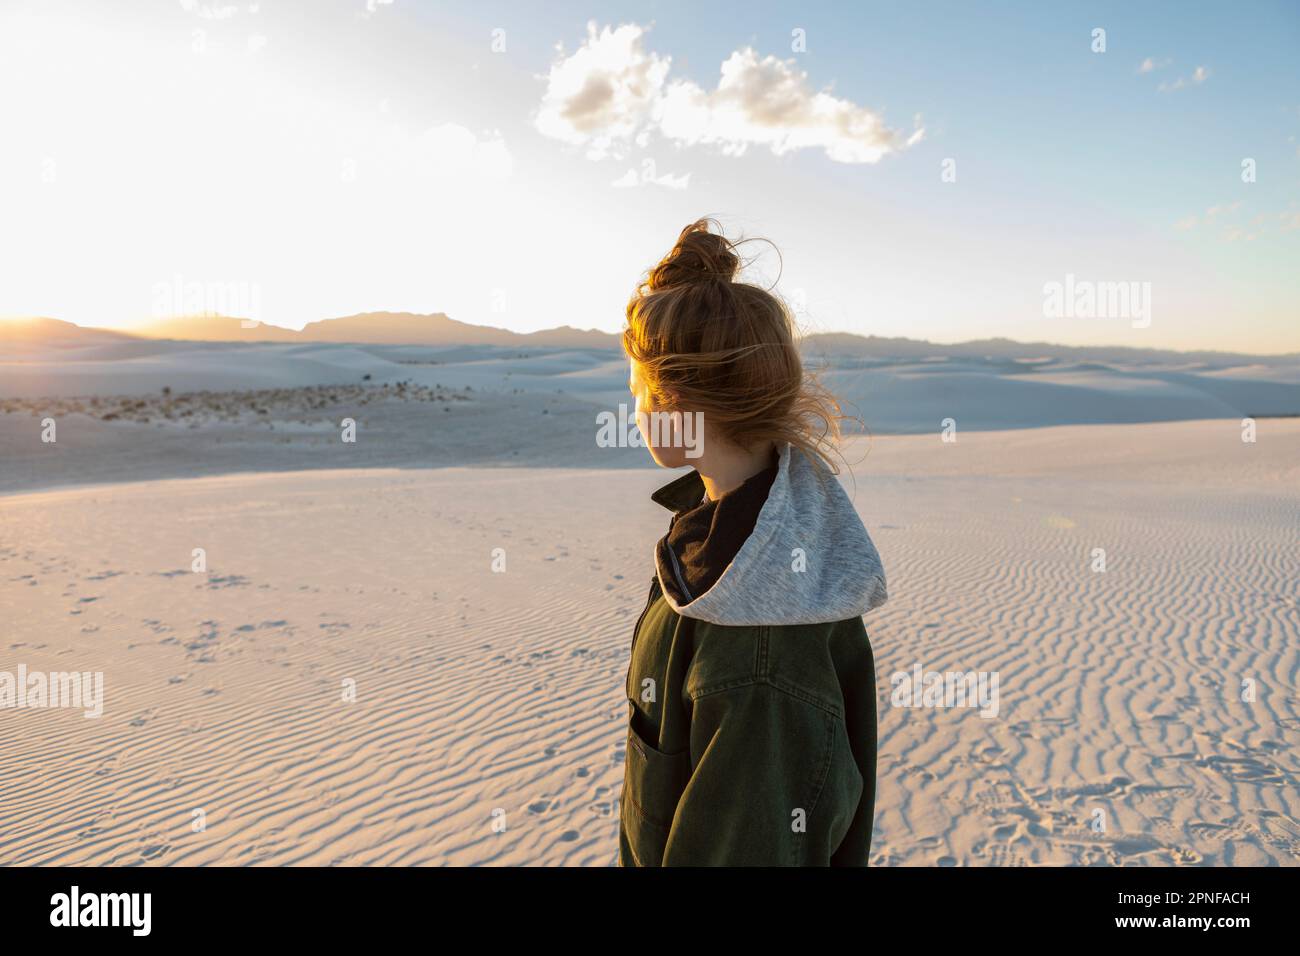 États-Unis, Nouveau-Mexique, parc national de White Sands, adolescente regardant le coucher du soleil Banque D'Images